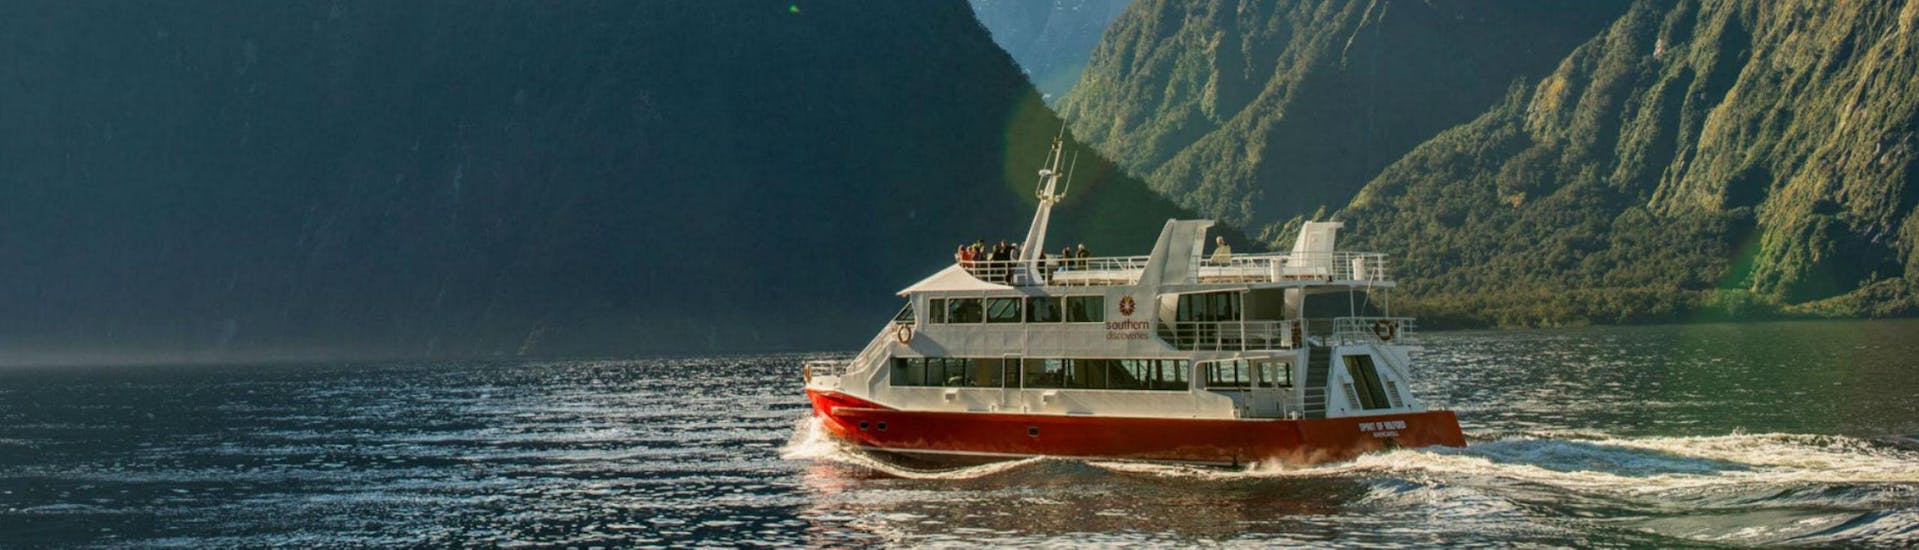 Gita in barca da Milford Sound a Milford Sound Fjord con osservazione della fauna selvatica.